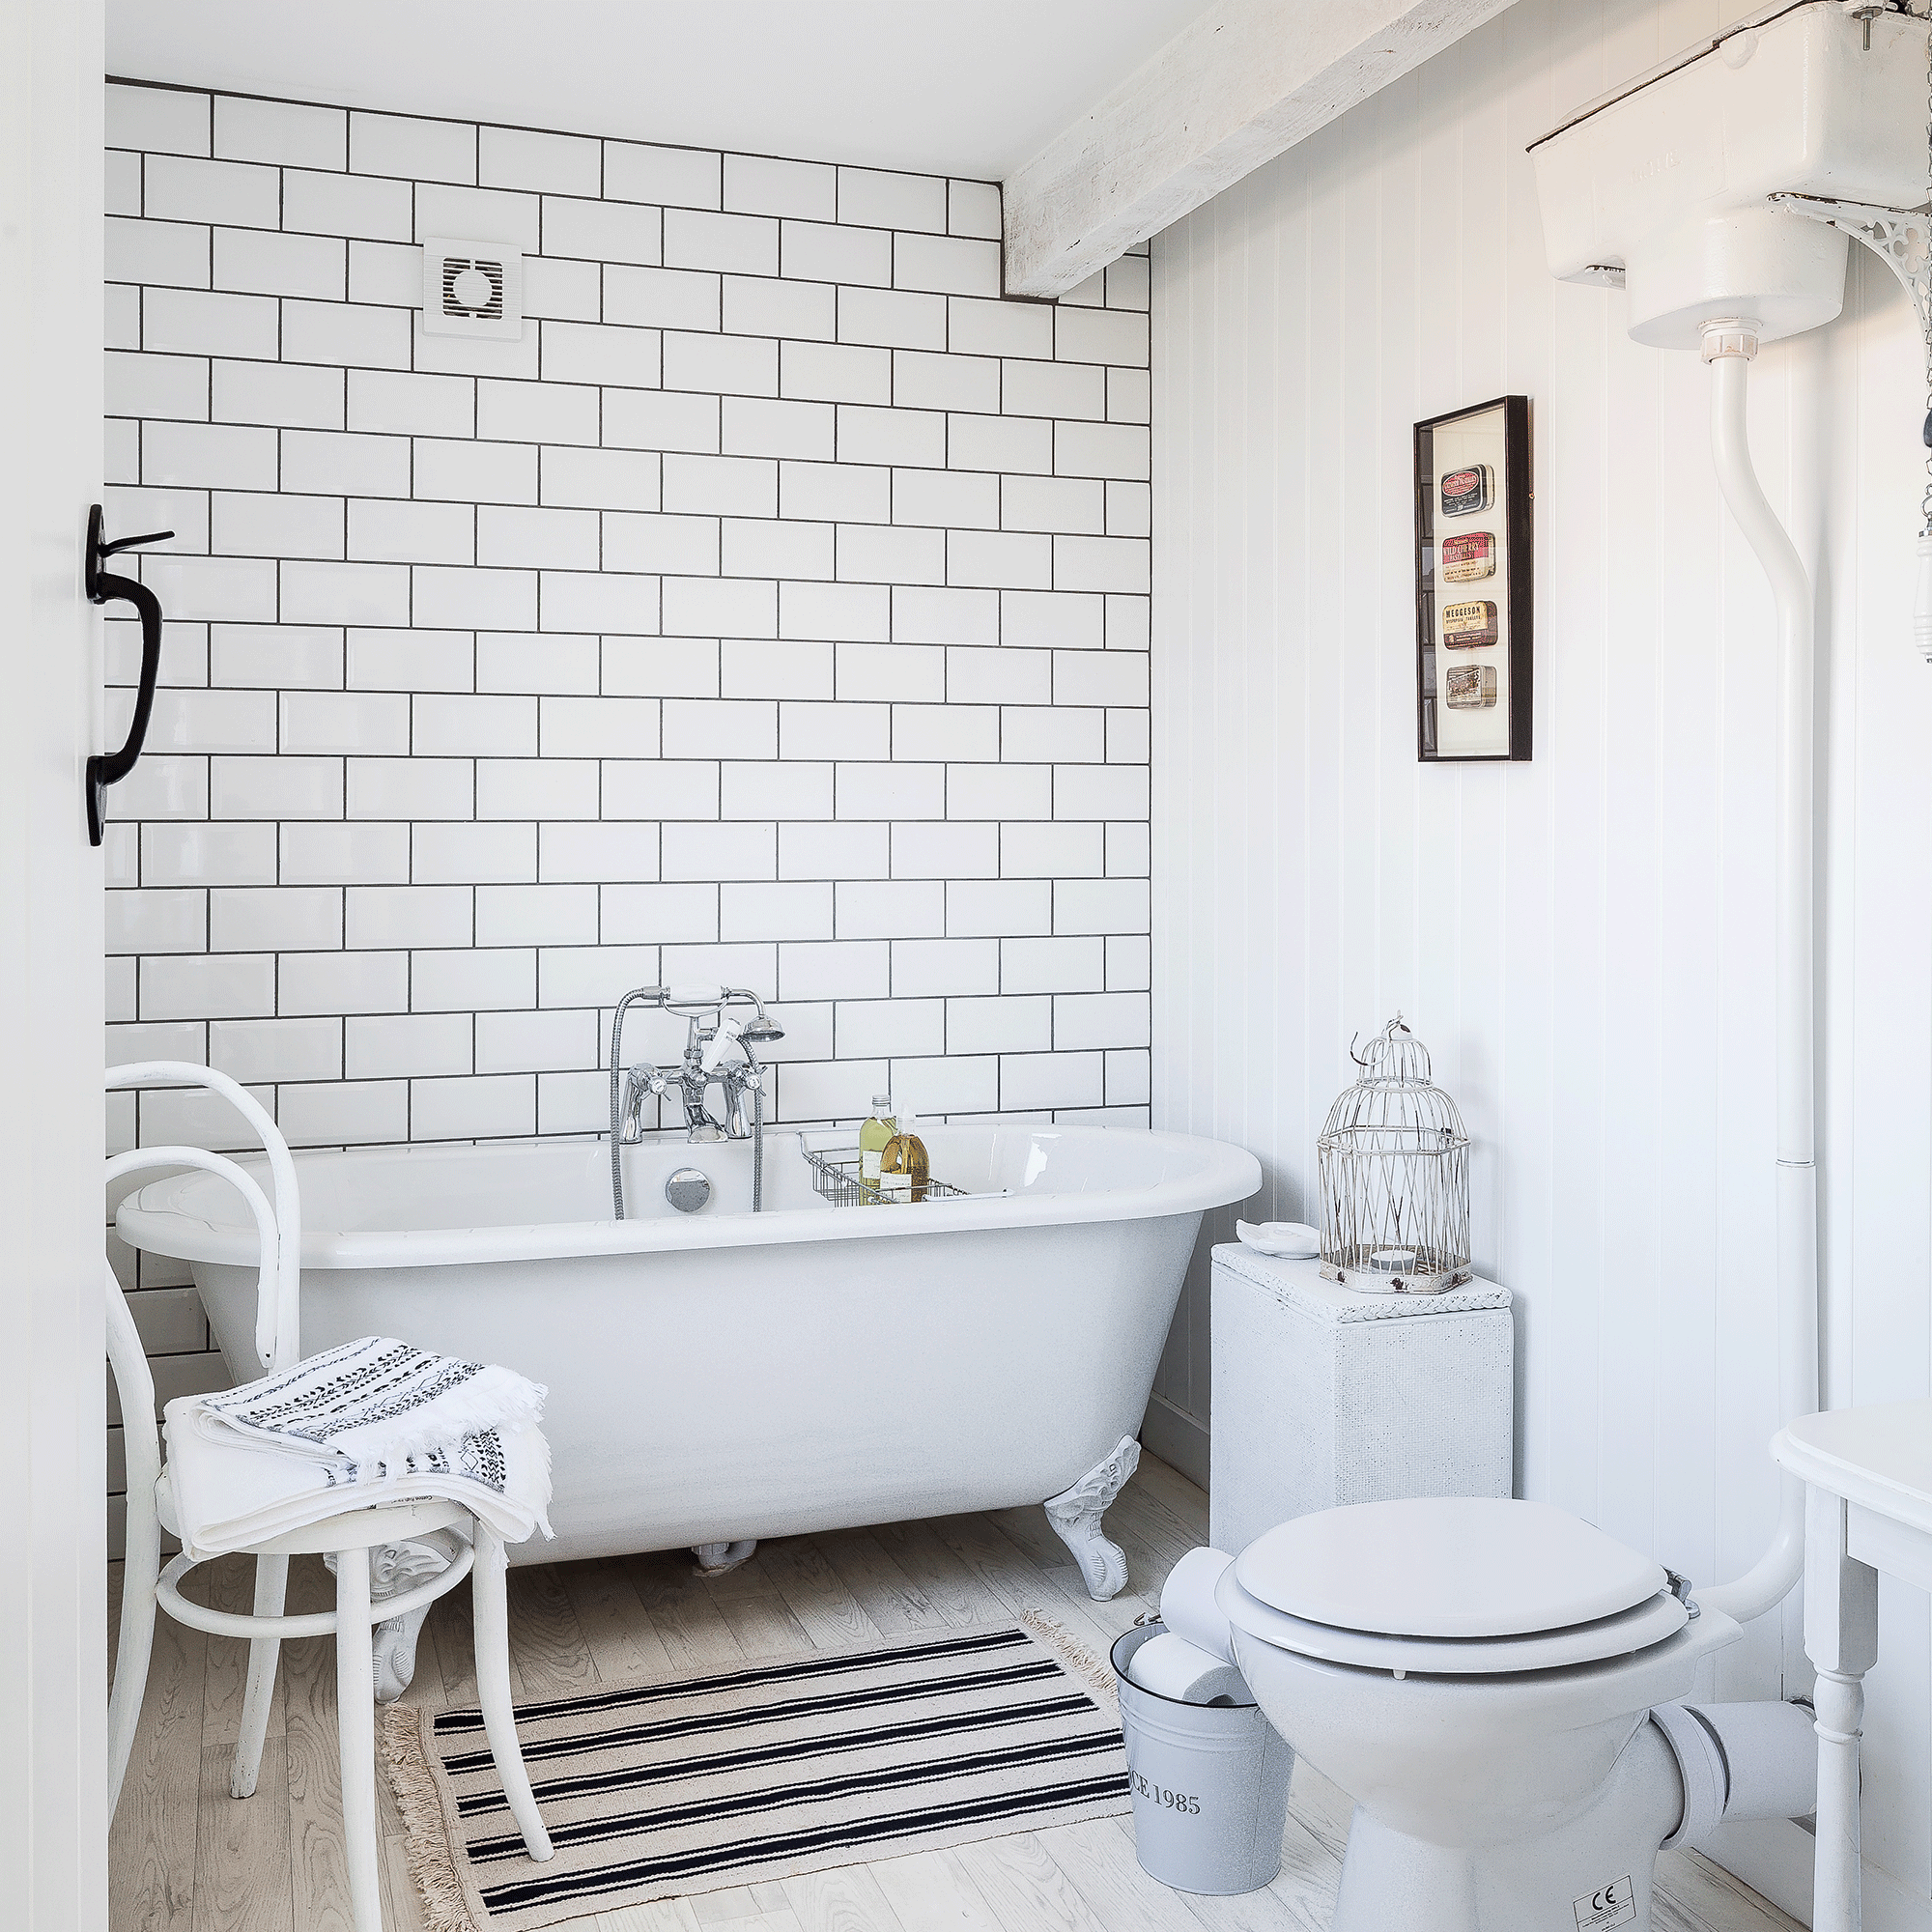 White bathtub and white tiles